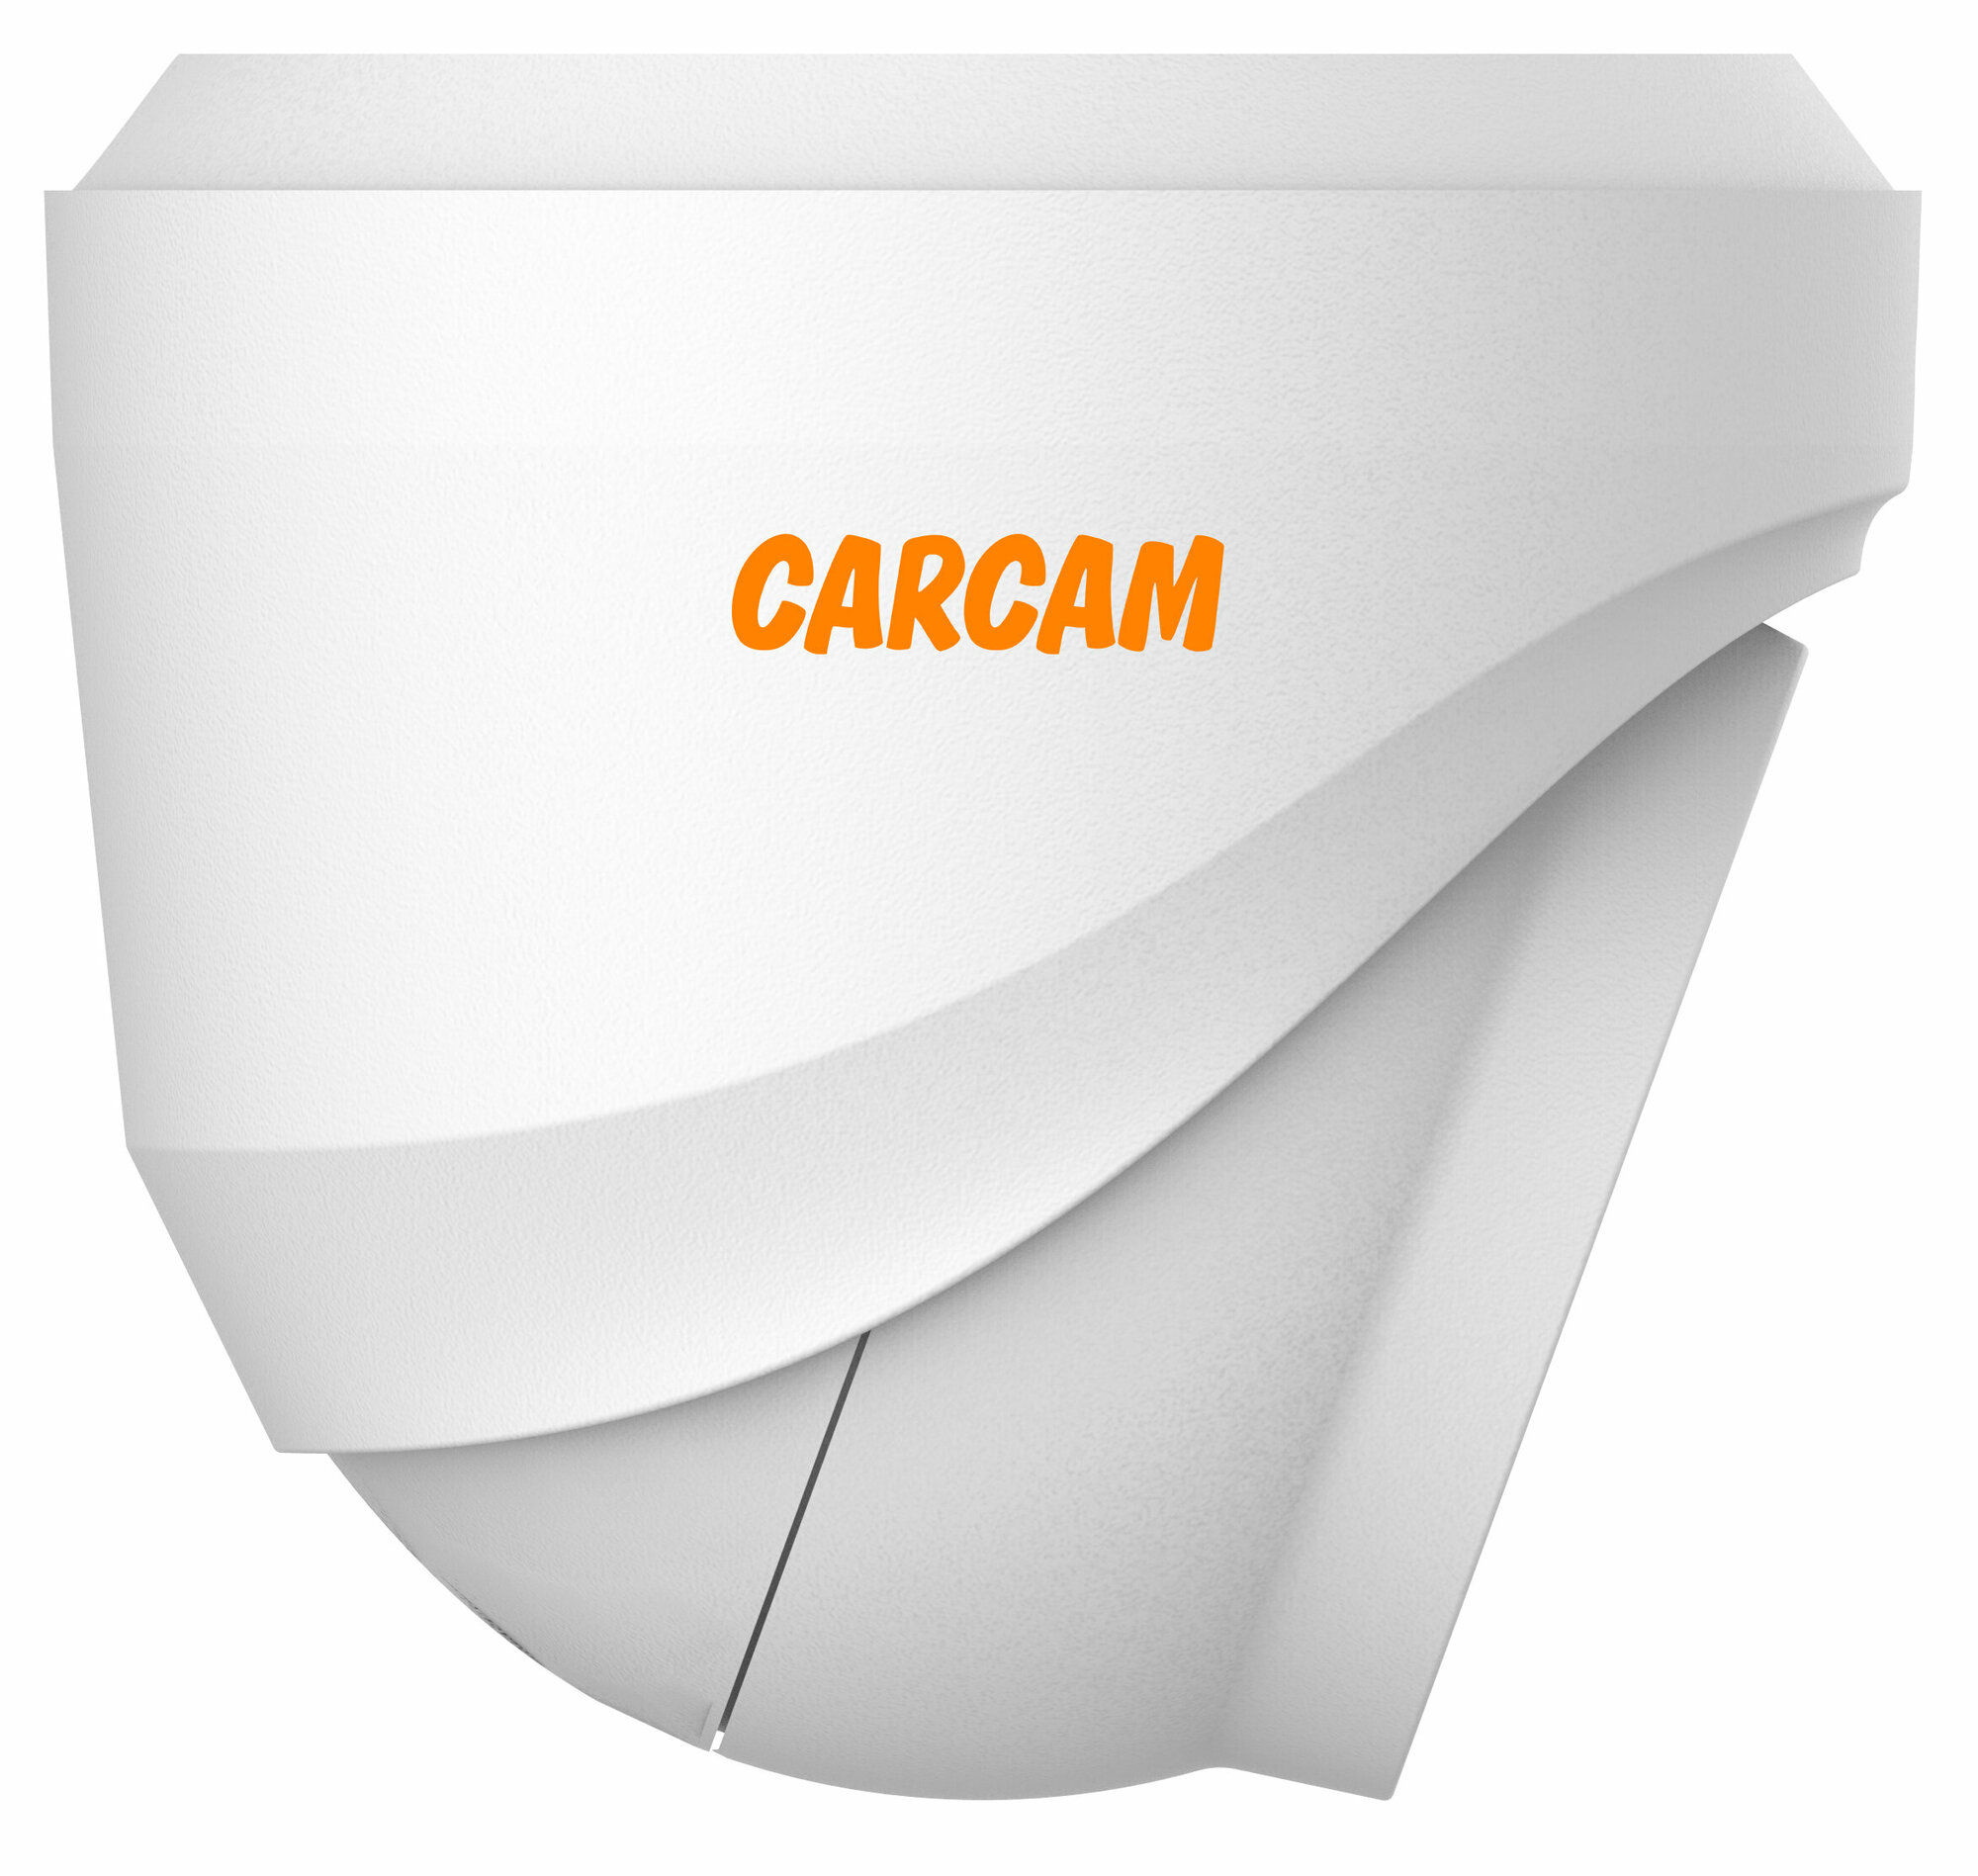 Купольная AHD камера CARCAM - фото №2